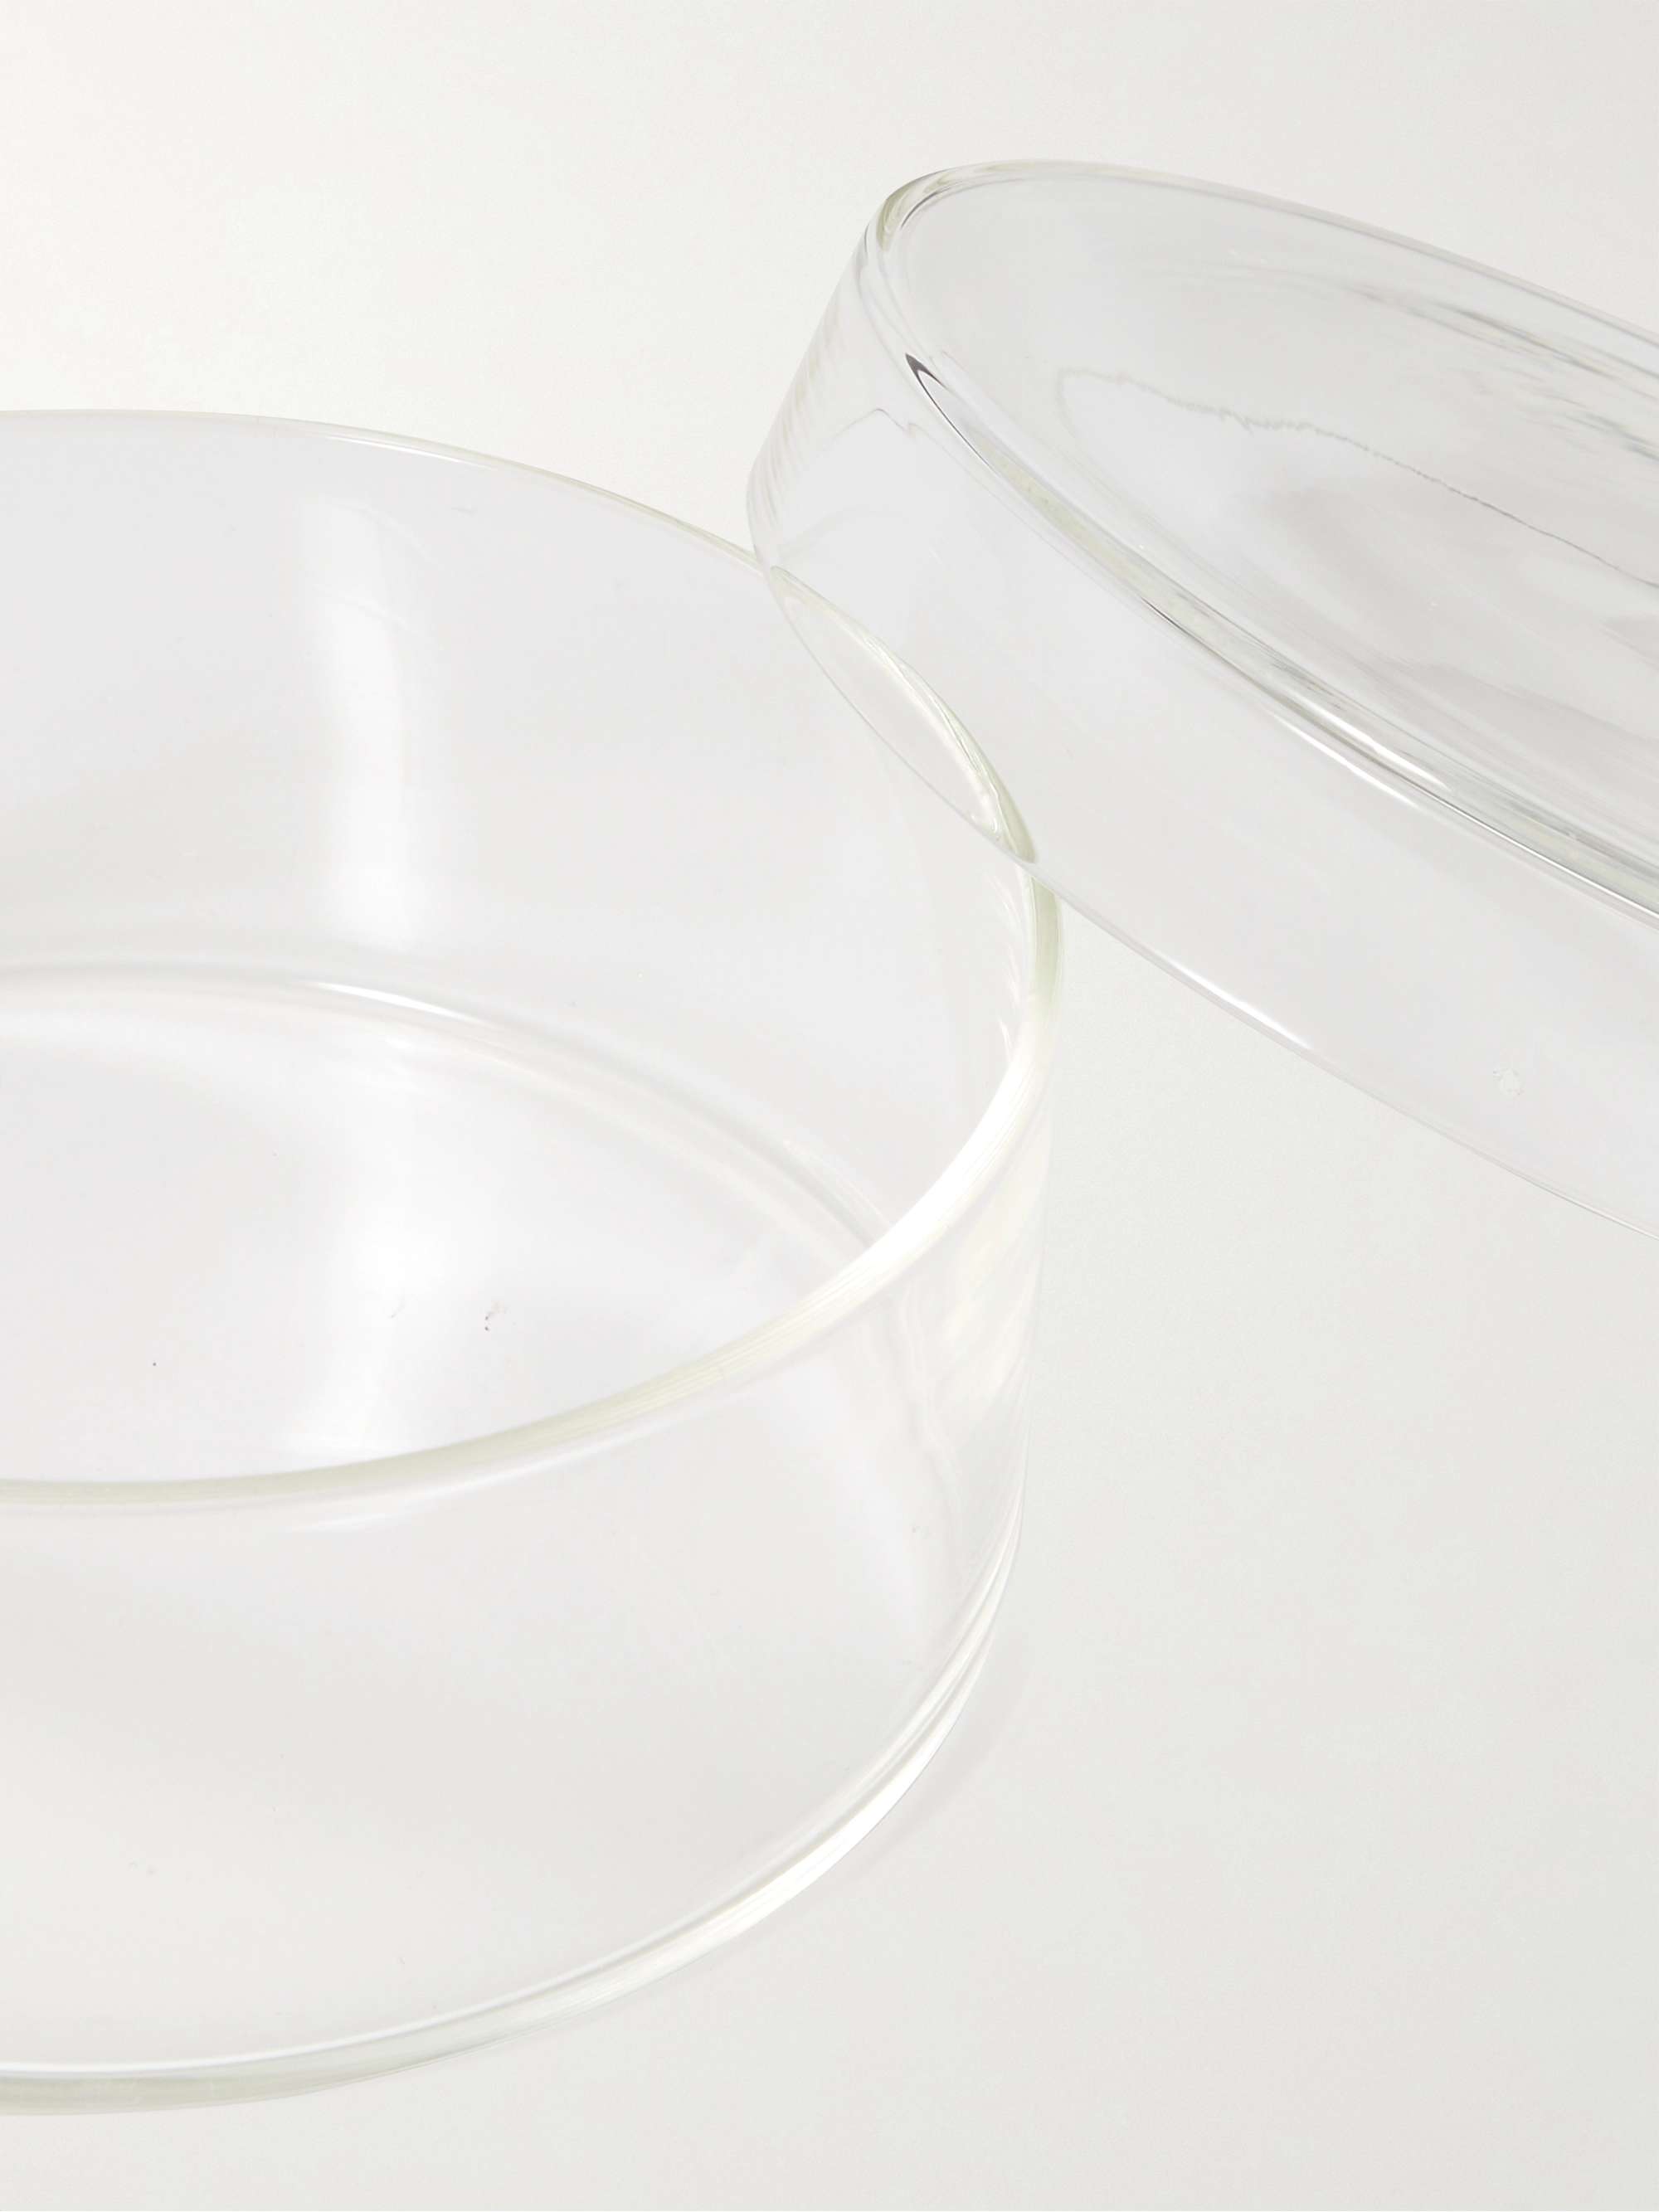 BY JAPAN + Koizumi Glass Futa To Mi Glass Storage Canister